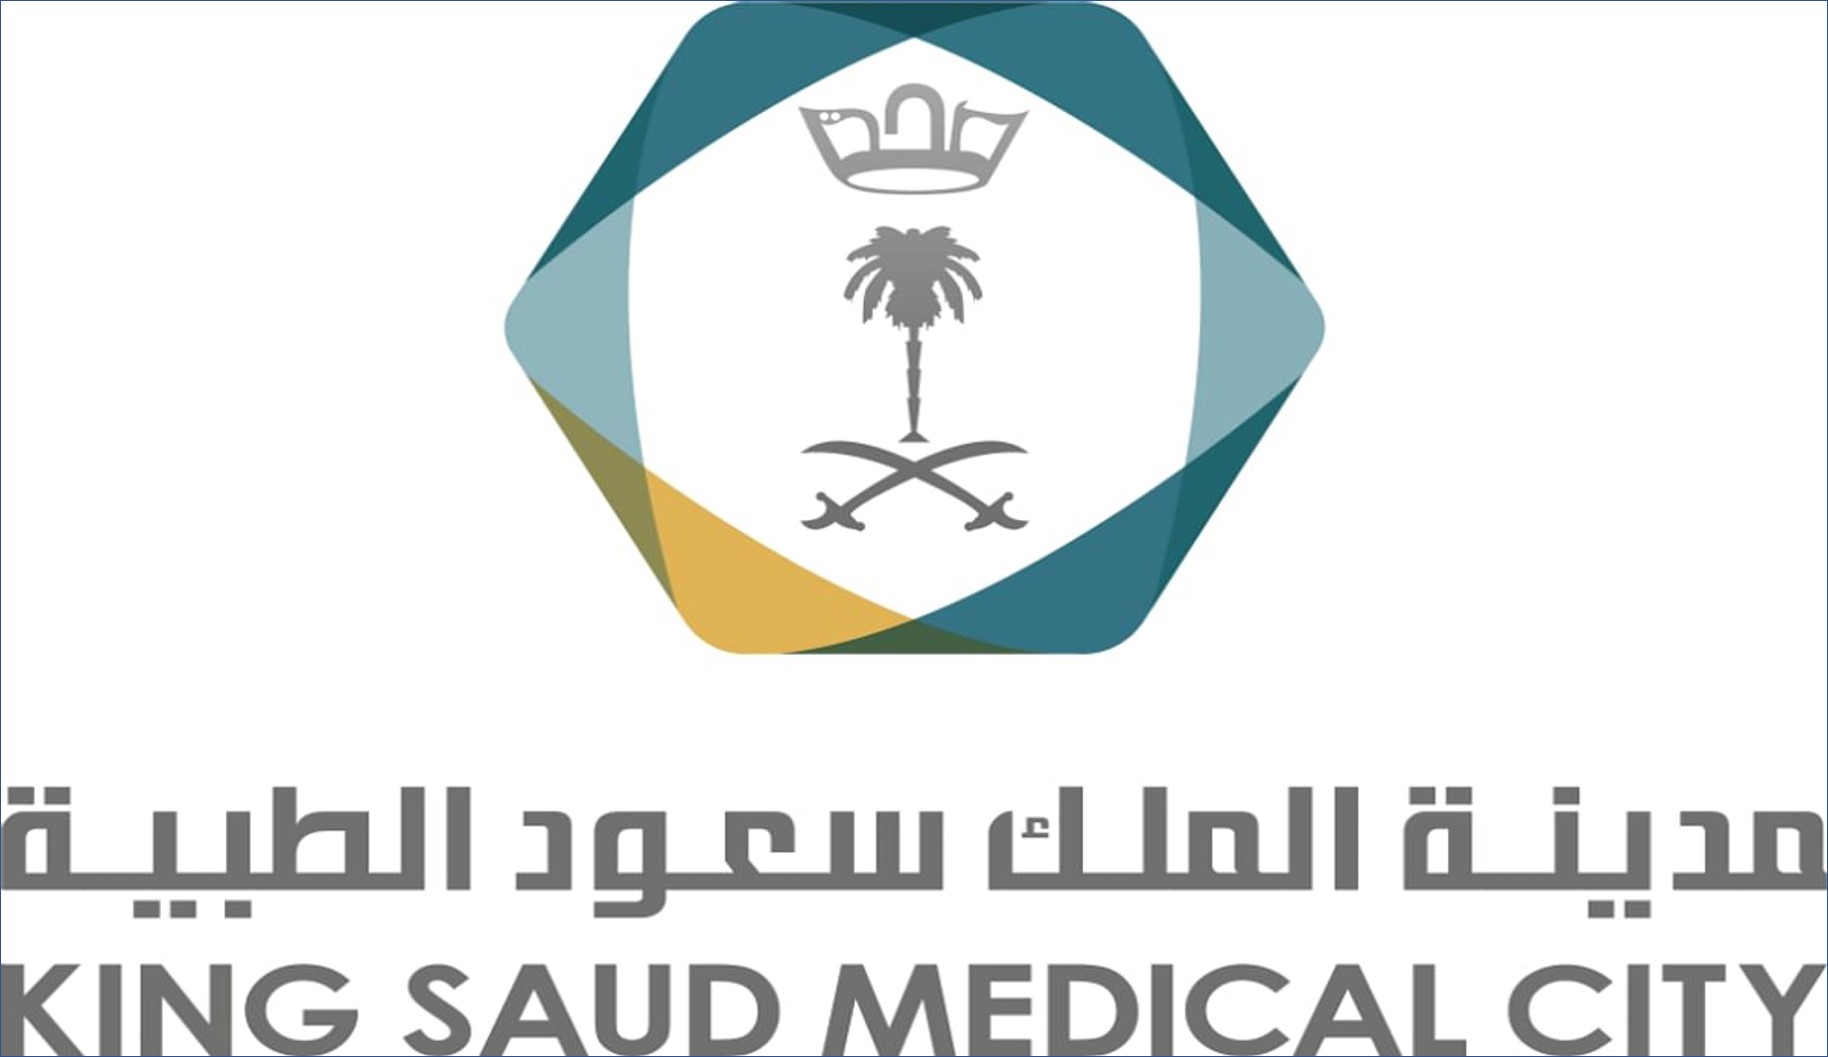 مدينة الملك سعود الطبية تعلن عن وظائف إدارية وصحية